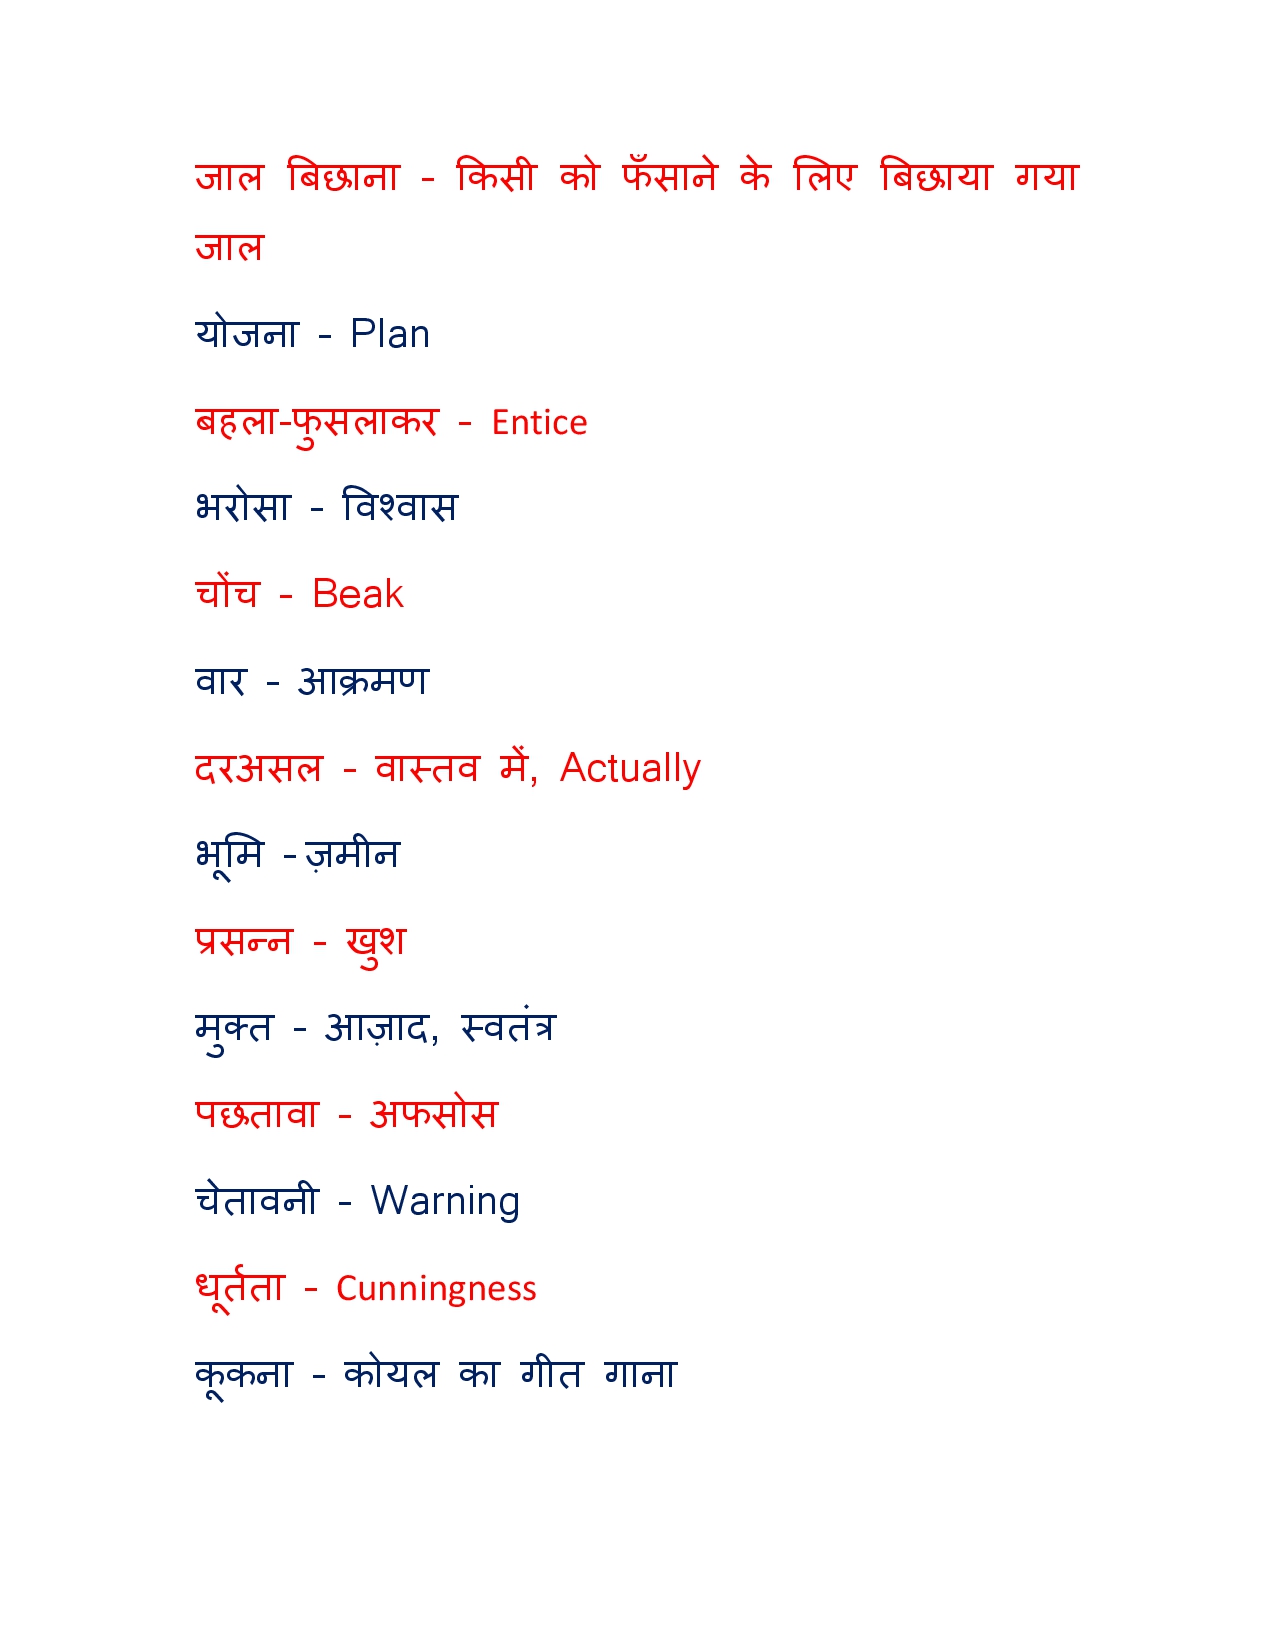 Menacing Meaning in Hindi - Menacing – शब्द का अर्थ (Meaning), परिभाषा ( Definition), स्पष्टीकरण और वाक्यप्रयोग वाले उदाहरण (Examples) आप यहाँ पढ़  सकते है।